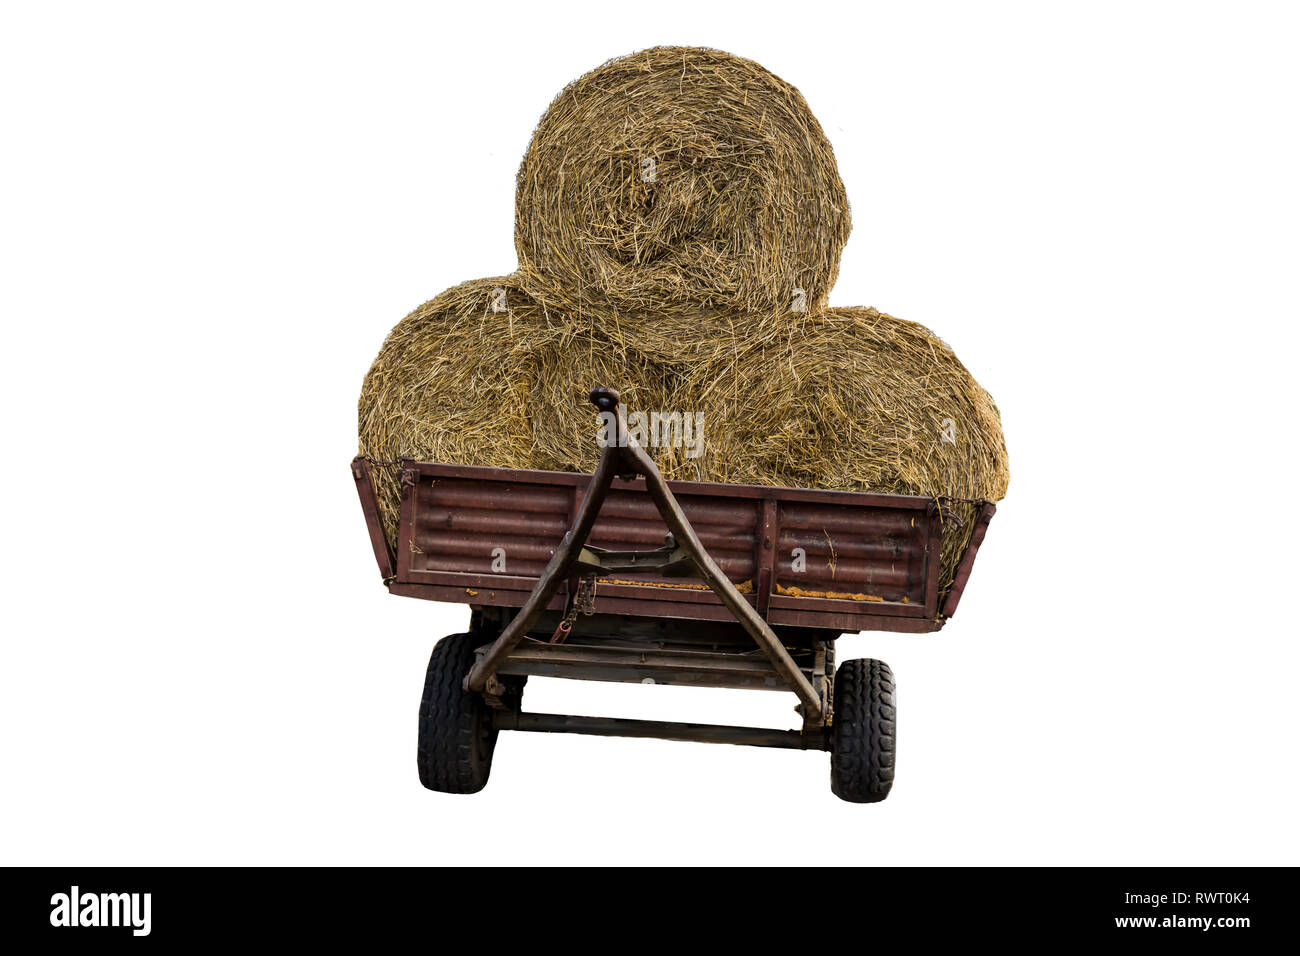 Rundballen Stroh, mit einem Netz, auf einem Traktor Anhänger geladen. Stroh ist ein weit verbreitetes Material für Vieh Betten auf dem Bauernhof. Isoliert Foto. Stockfoto